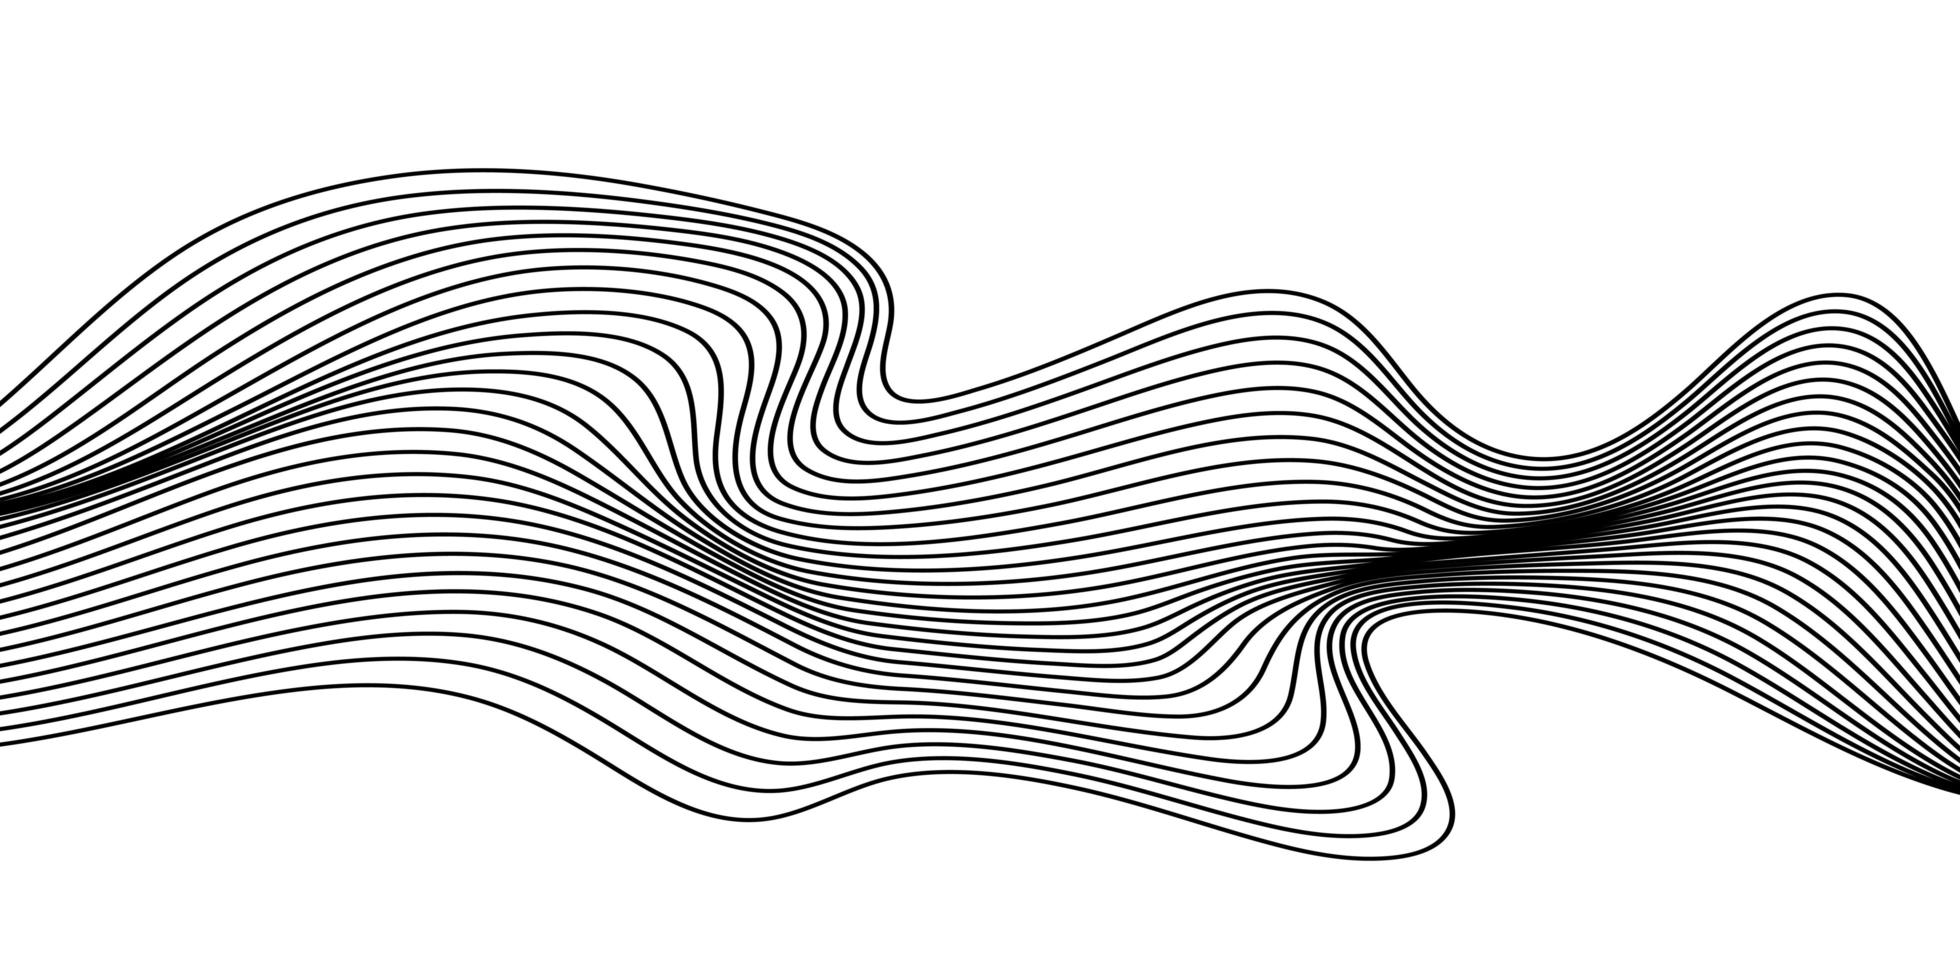 abstrakter 3d geometrischer Hintergrund des Schwarzweiss-Entwurfs mit optischer Täuschung vektor